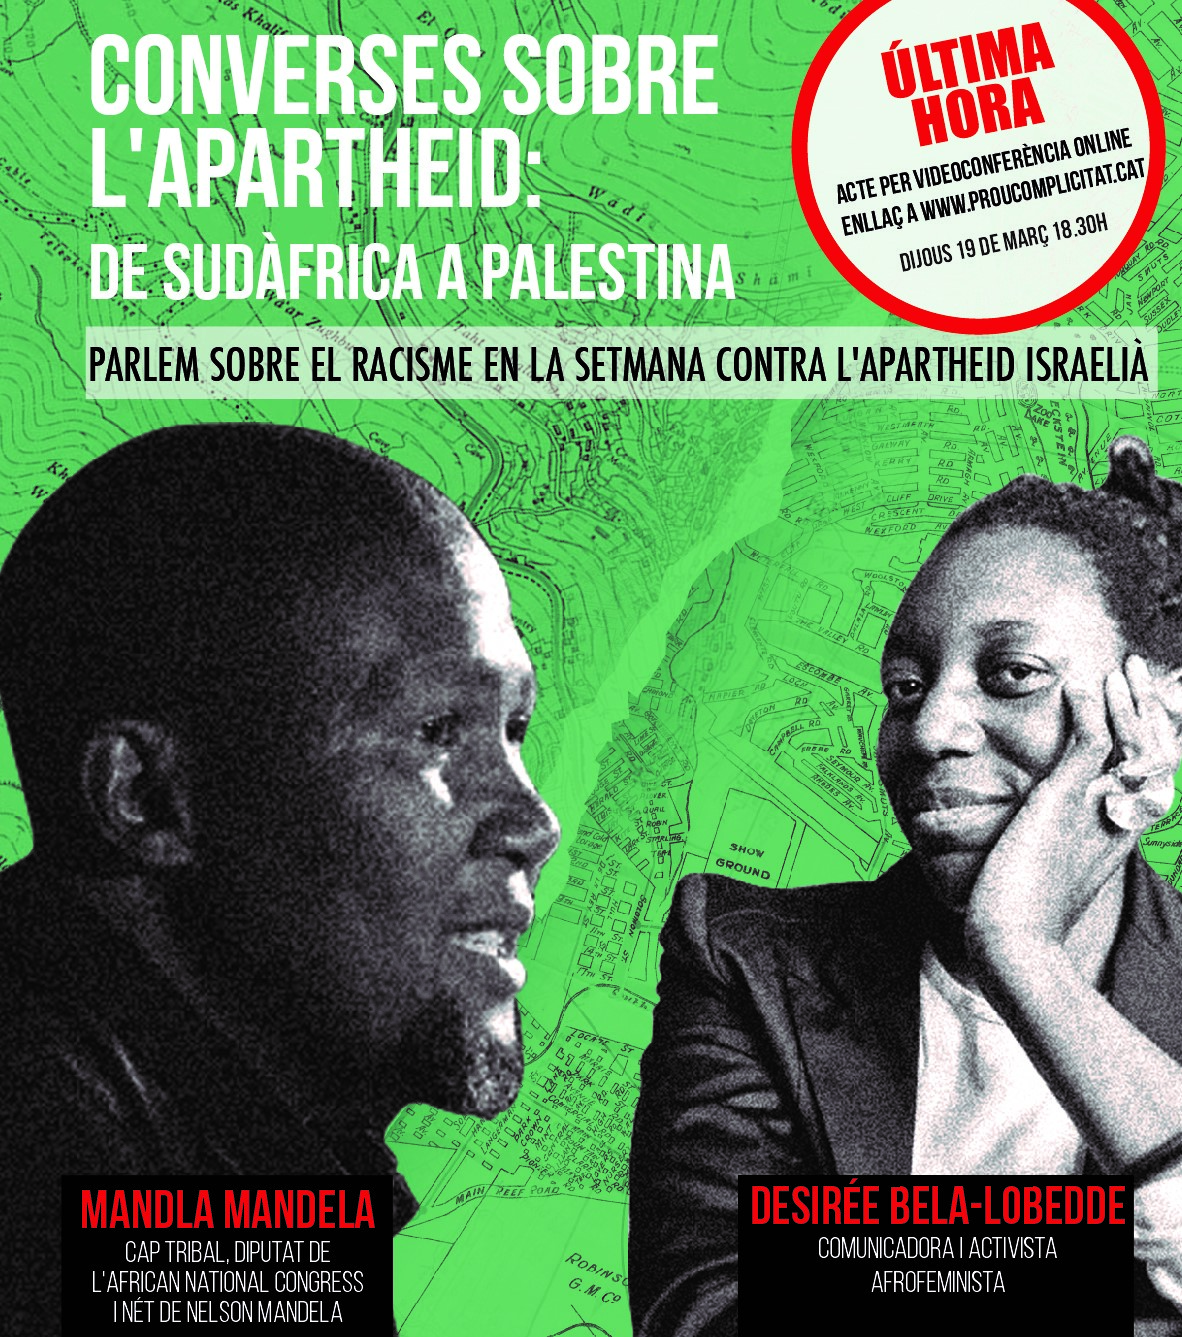 Mandla Mandela visita Barcelona en la Semana contra el apartheid